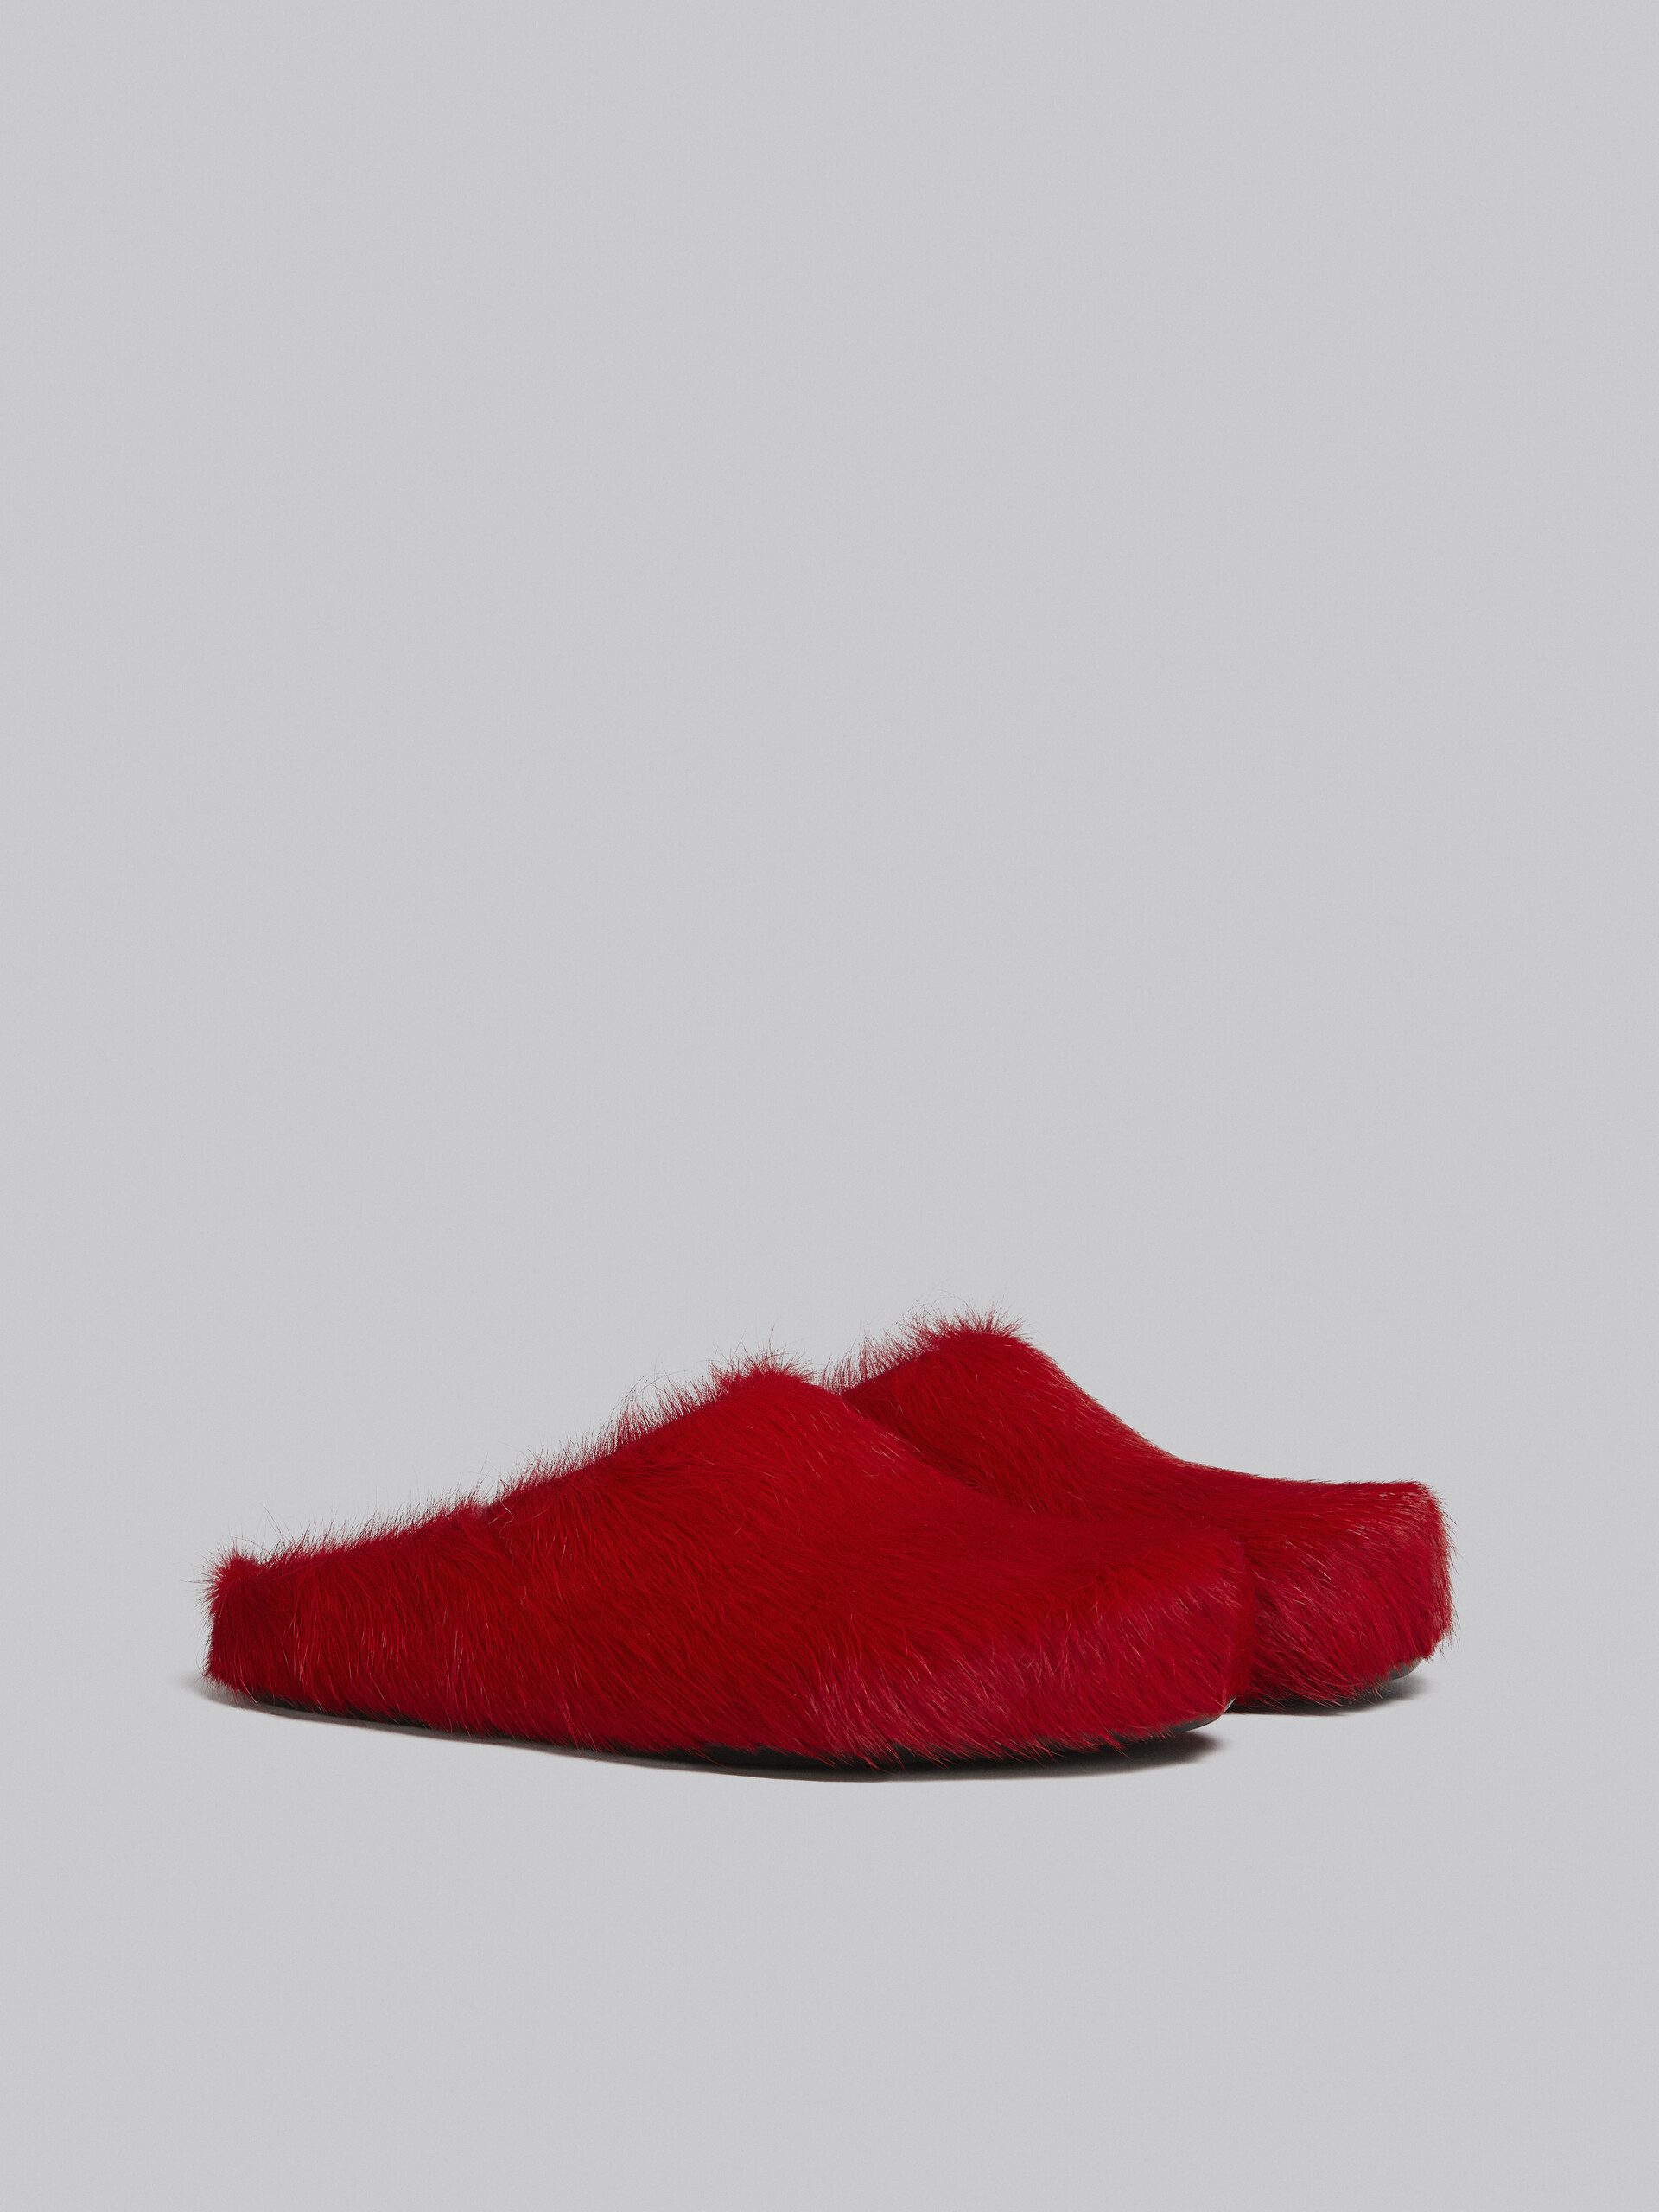 Red long hair calfskin Fussbett sabot - Clogs - Image 2